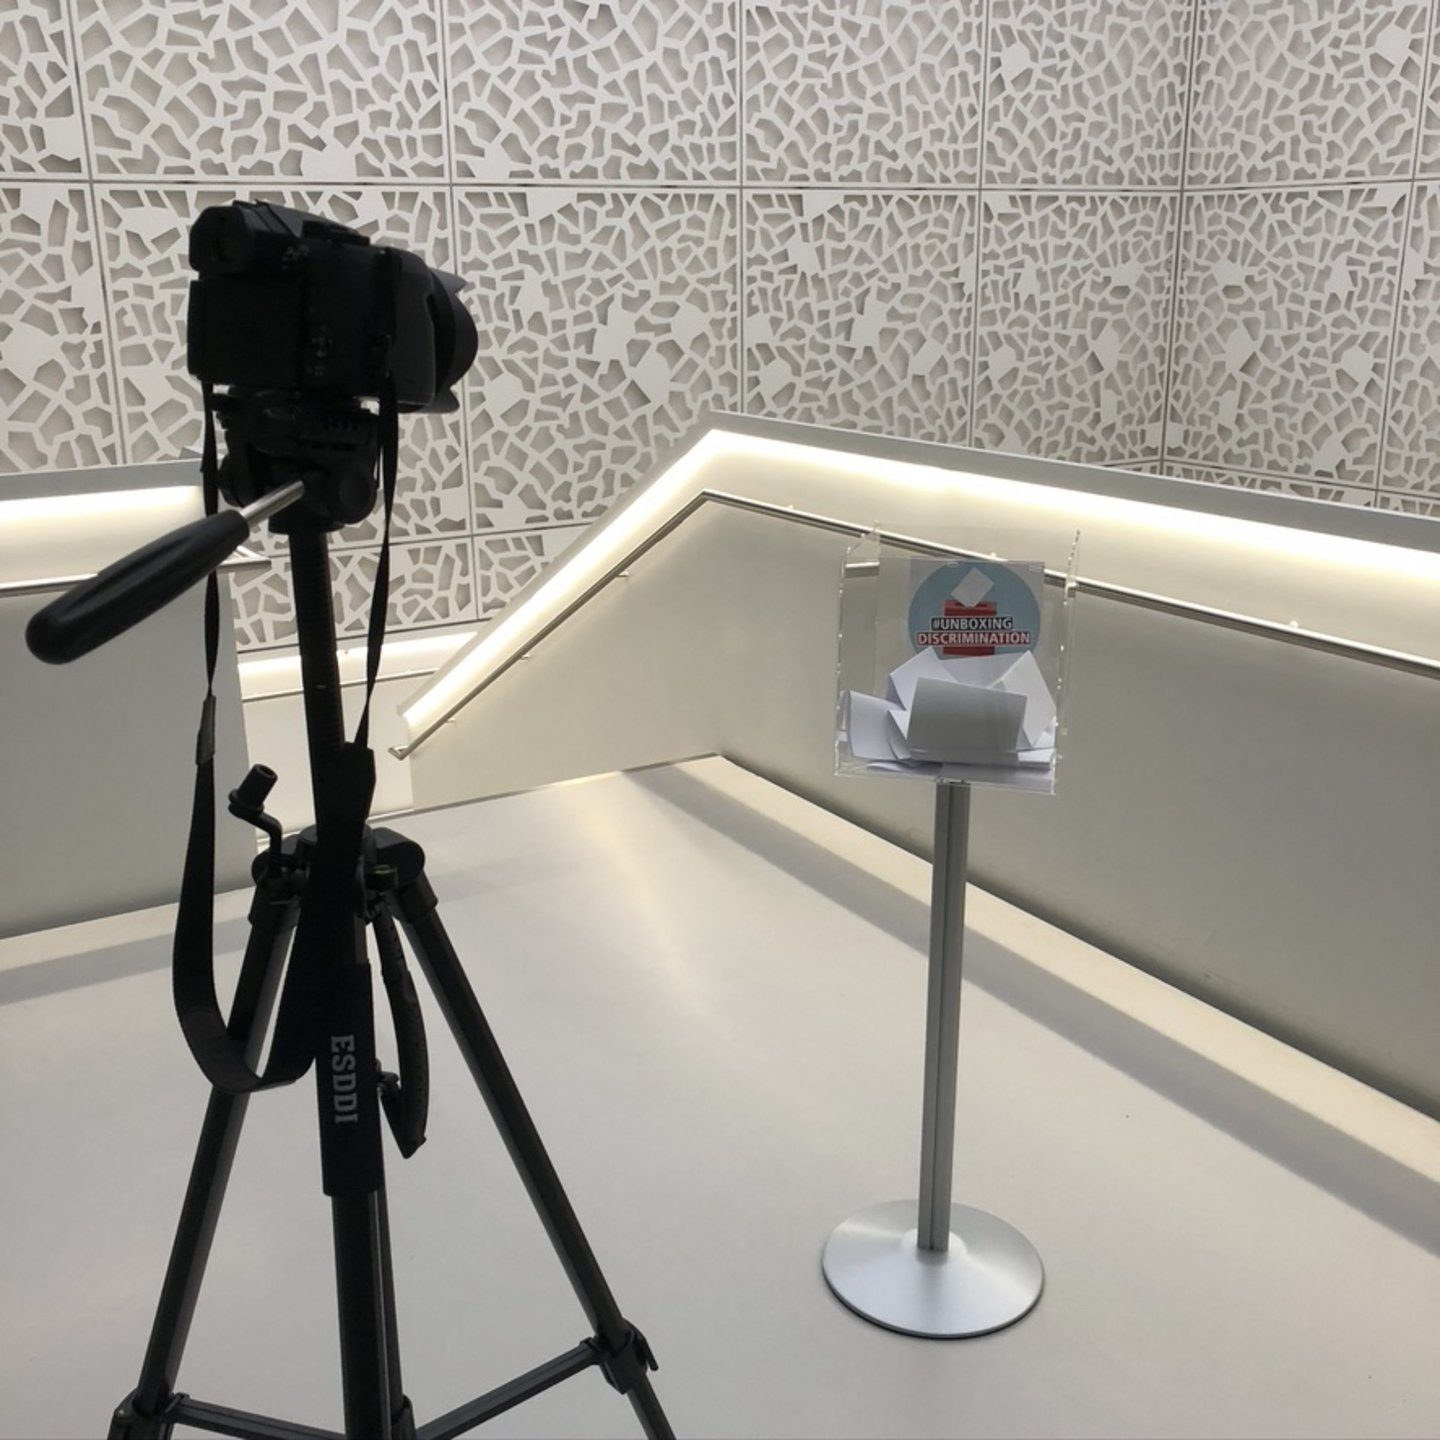 Eine Kamera auf einem Stativ zeigt auf eine Plexiglassbox auf einem silbernen Ständer, die im Treppenhaus des SSC der Uni Köln steht. In dieser Box sind zahlreiche weiße Zettel und das Logo der Kampagne #unboxingdiscrimination.